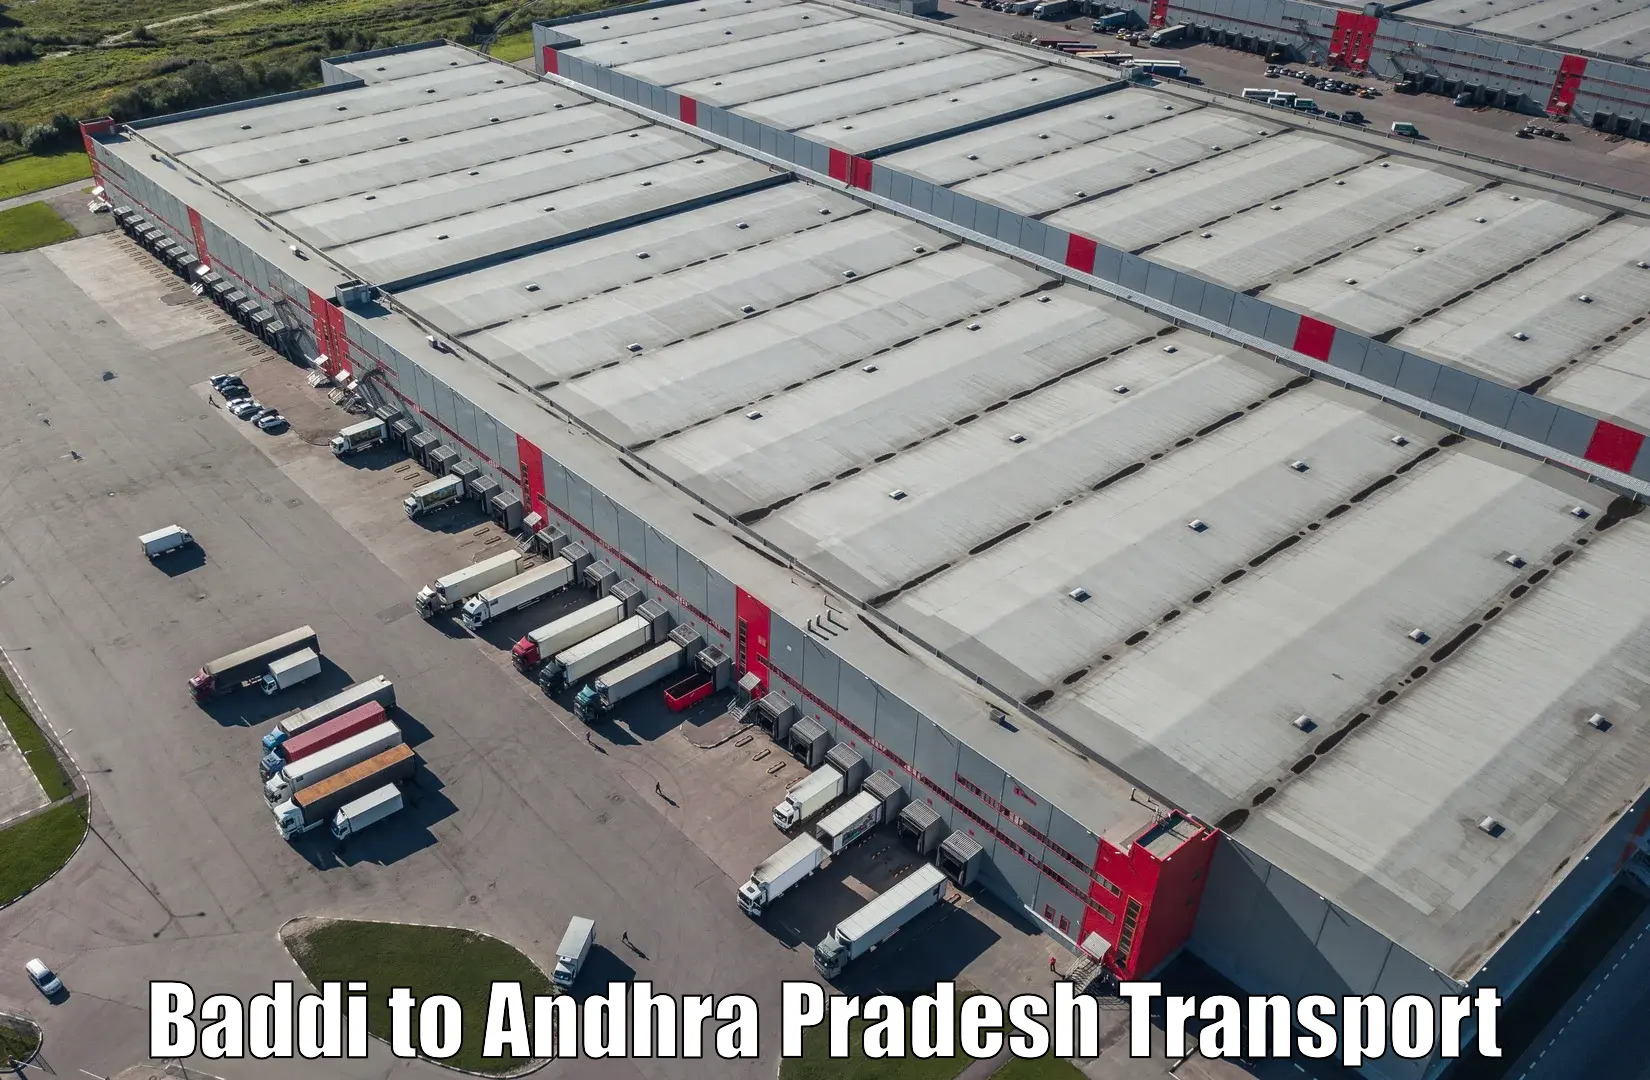 Transport in sharing Baddi to Chitrada